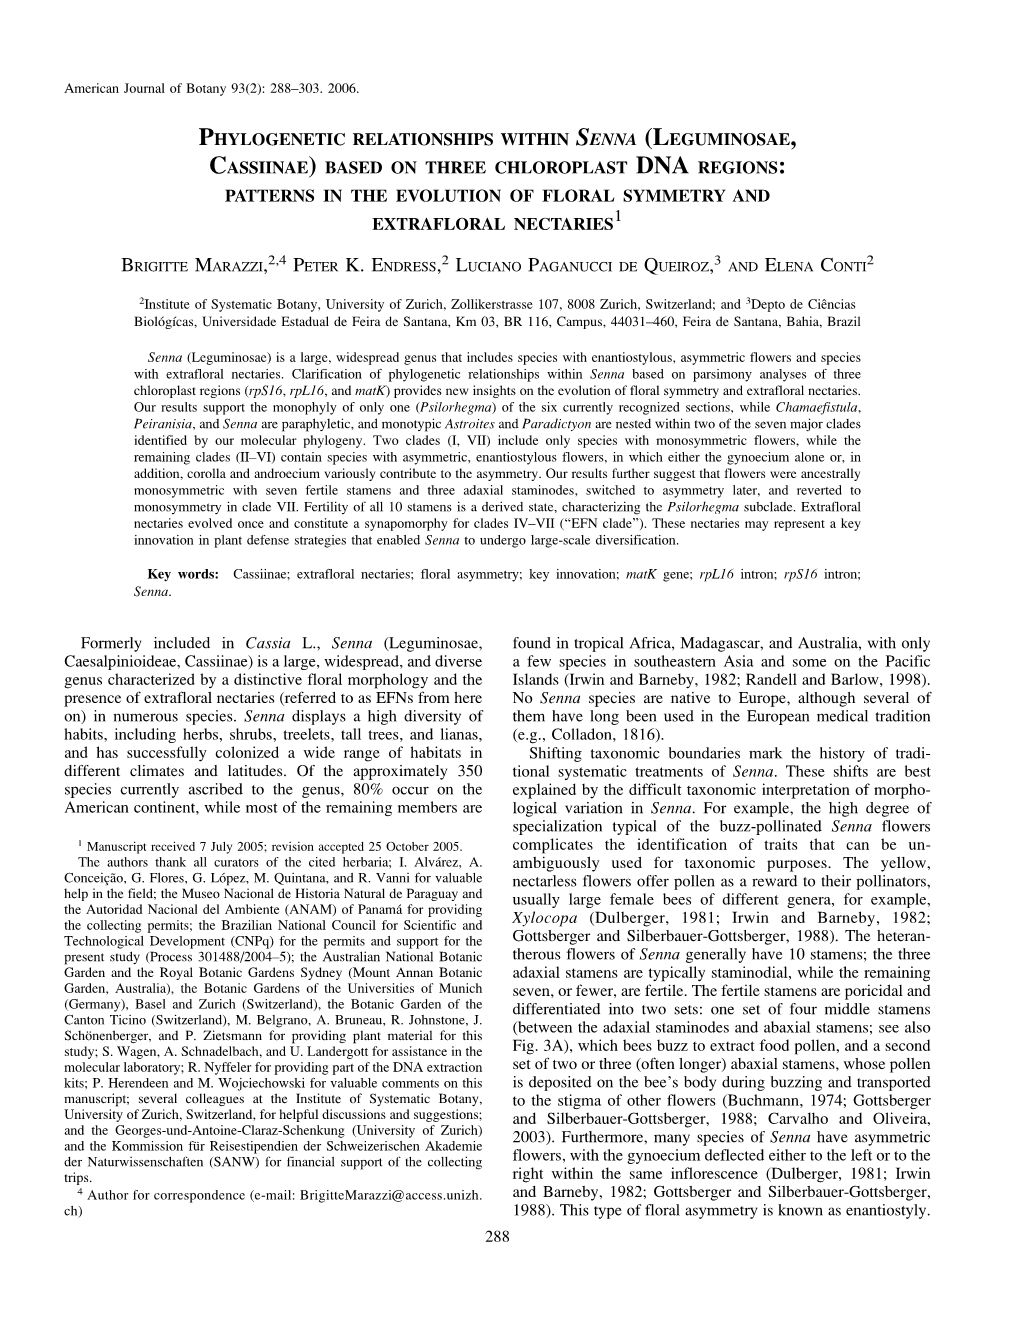 Phylogenetic Relationships Within Senna (Leguminosae, Cassiinae)